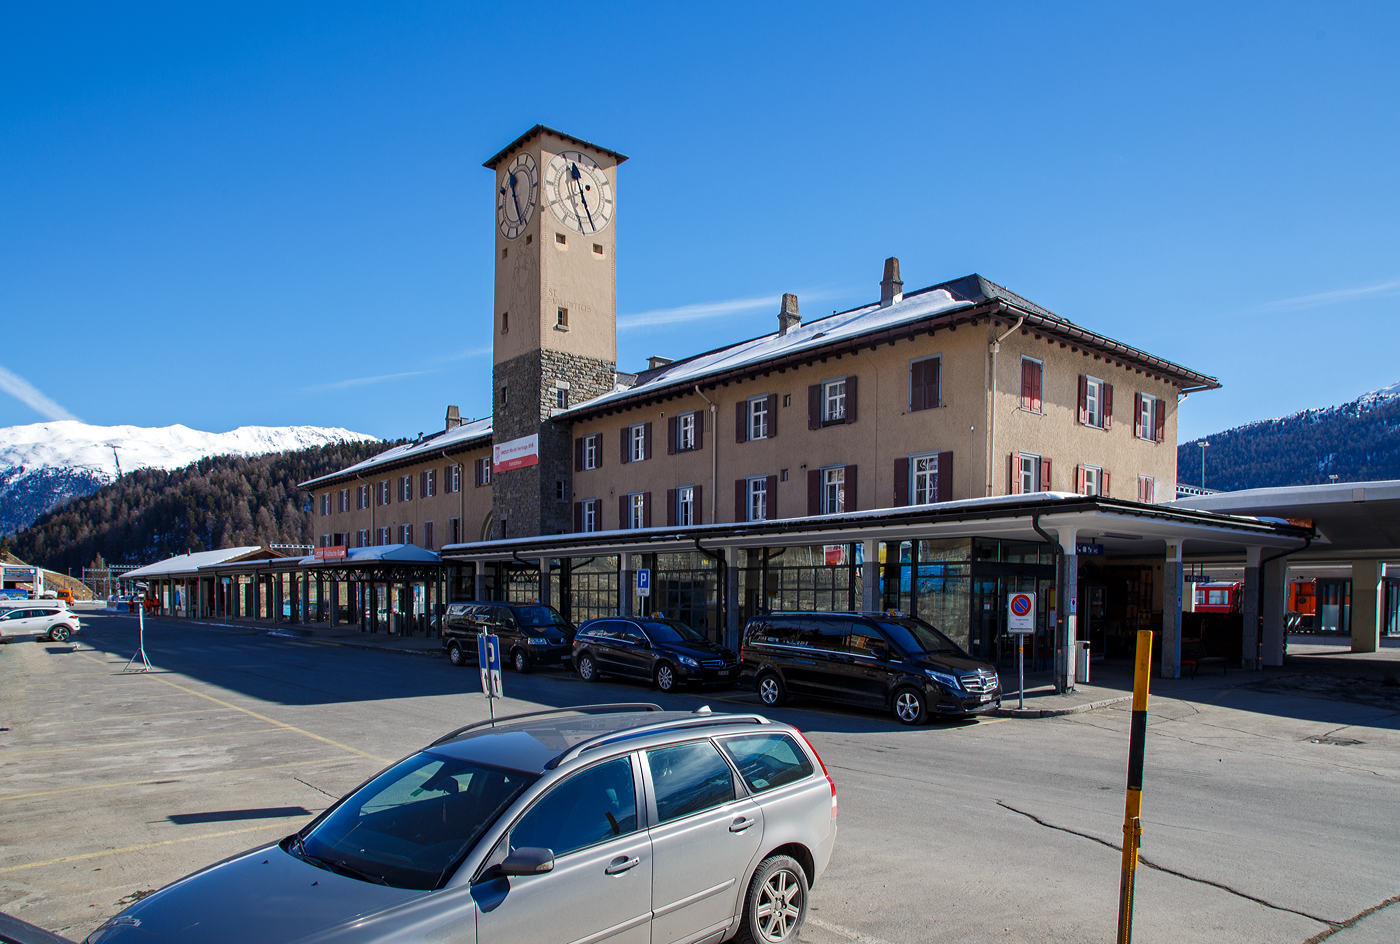 Der RhB Bahnhof St. Moritz blick von der Vorplatzseite mit dem Empfangsgebäude und links dem Güterschuppen am 20 Februar 2017. 

Der Bahnhof St. Moritz ist der Bahnhof des Kurortes St. Moritz im Oberengadin im Kanton Graubünden. St. Moritz ist nach dem heiligen Mauritius benannt, der auch im Wappen abgebildet ist. Er ist aber auch hier an den Uhrenturm abgebildet. Der Bahnhof wird von der Rhätischen Bahn (RhB) betrieben und liegt auf 1.775 m über Meer am nordwestlichen Hang des Tales unmittelbar oberhalb des St. Moritzersees beim Ausfluss des Inn. Er ist Endbahnhof der Albulabahn und der Berninabahn. Da diese mit unterschiedlichen Stromsystemen betrieben werden, ist er zugleich ein Systemwechselbahnhof.

Hinten links sieht man auch die Standseilbahn Muottas-Muragl-Bahn (MMB). Die Standseilbahn führt von Punt Muragl (1.739 m ü. M.) zwischen Samedan und Pontresina, auf den Muottas Muragl (2.448 m ü. M.). Die Bahn hat eine Streckenlänge von 2.199 m und überwindet eine Höhendifferenz  von 709 m. Sie ist die älteste Bergbahn im Engadin und feierte 2007 ihr 100-jähriges Bestehen.

Der Bahnhof St. Moritz:
Der Bahnhof wurde als Durchgangsbahnhof gebaut, da anfänglich eine Verlängerung der Strecke Richtung Maloja geplant war. So führte ein Gleis von der Westseite des Bahnhofs zunächst über eine Brücke und anschließend fast in den Hang hinein. An dieser Stelle war das Portal eines Tunnels geplant, der das Ortszentrum von St. Moritz unterfahren sollte.

Im Hinblick auf die Skiweltmeisterschaften 2017 in St. Moritz wurde der Bahnhof zwischen 2014 und 2017 zu einem Kopfbahnhof mit schienenfreien Zugängen und einem Querperron ausgebaut. Die drei neuen, überdachten Perrons (Bahnsteige) an fünf Personengleisen sind behindertengerecht gestaltet. Wobei die alte Gestaltung mir persönlich besser gefiel. Das Bahnhofgebäude blieb unverändert, während der Bahnhofplatz mit einem Busterminal neu konzipiert wurde. Der Güterschuppen wird für bahneigene Nutzung verwendet. Für die diversen neuen Abstellgleise musste die RhB eine 250m lange Stützmauer entlang der Kantonsstraße erstellen lassen.

Baulich:
Das stattliche Aufnahmegebäude liegt auf der Bergseite der Gleisanlagen und besitzt einen Hausbahnsteig. Dazu existieren ein Mittelbahnsteig für die Züge des RhB-Stammnetzes und ein weiterer für die Züge der Berninabahn. Östlich des Empfangsgebäudes steht der Güterschuppen mit Rampe (hier links im Bild), eine weitere offene Verladerampe liegt im östlichen Bahnhofsteil zwischen den beiden Streckenausfahrten. Daneben sind umfangreiche Abstellanlagen vorhanden.

Die Berninabahn führt unmittelbar nach dem Bahnhof über die Innbrücke und kurz darauf in den 689 m langen Charnadüra-Tunnel II. Unter der Bahnbrücke führt eine Straßenbrücke in einem anderen, sich kreuzenden Winkel über den Inn. Die Albulabahn führt gleich nach dem Bahnhof in den 114 m langen Argenteri-Tunnel und kurz darauf durch den 448 m langen Charnadüra-Tunnel I.

Das Empfangsgebäude wurde 1927 gebaut und ersetzte das erste Empfangsgebäude.

Betrieblich:
Der Bahnhof ist betrieblich zweigeteilt, da die beiden Strecken mit unterschiedlichen Stromsystemen betrieben werden. So ist die zum RhB-Stammnetz (StN) gehörende Albulabahn mit 11 kV 16⅔ Hz Wechselstrom, die Berninabahn (BB) dagegen mit 1 kV Gleichstrom elektrifiziert. Für Rangiermanöver waren aus diesem Grund 2017 noch dieselbetriebene Rangierfahrzeuge (z.B. RhB Tm 2/2) stationiert.

Der Fahrplan besteht aus einem stündlichen InterRegio über die Albulabahn nach Chur und einem stündlichen Regio nach Pontresina, der meistens nach Tirano weiterfährt. Der InterRegio hat in Samedan Anschluss an die Züge ins Unterengadin. Zusätzlich verkehren RegioExpress nach Zernez (– Vereinatunnel –) Klosters – Landquart. Der Bahnhof ist der offizielle Start- und Endpunkt des Glacier-Expresses. Aber auch die Triebwagen, die den Bernina-Express führen, starten und enden hier, während die Panoramawagen von und nach Chur beziehungsweise Davos von einem Zweistrom-Triebzug des Typs ABe 8/12 «Allegra» gezogen werden und direkt nach Pontresina fahren.